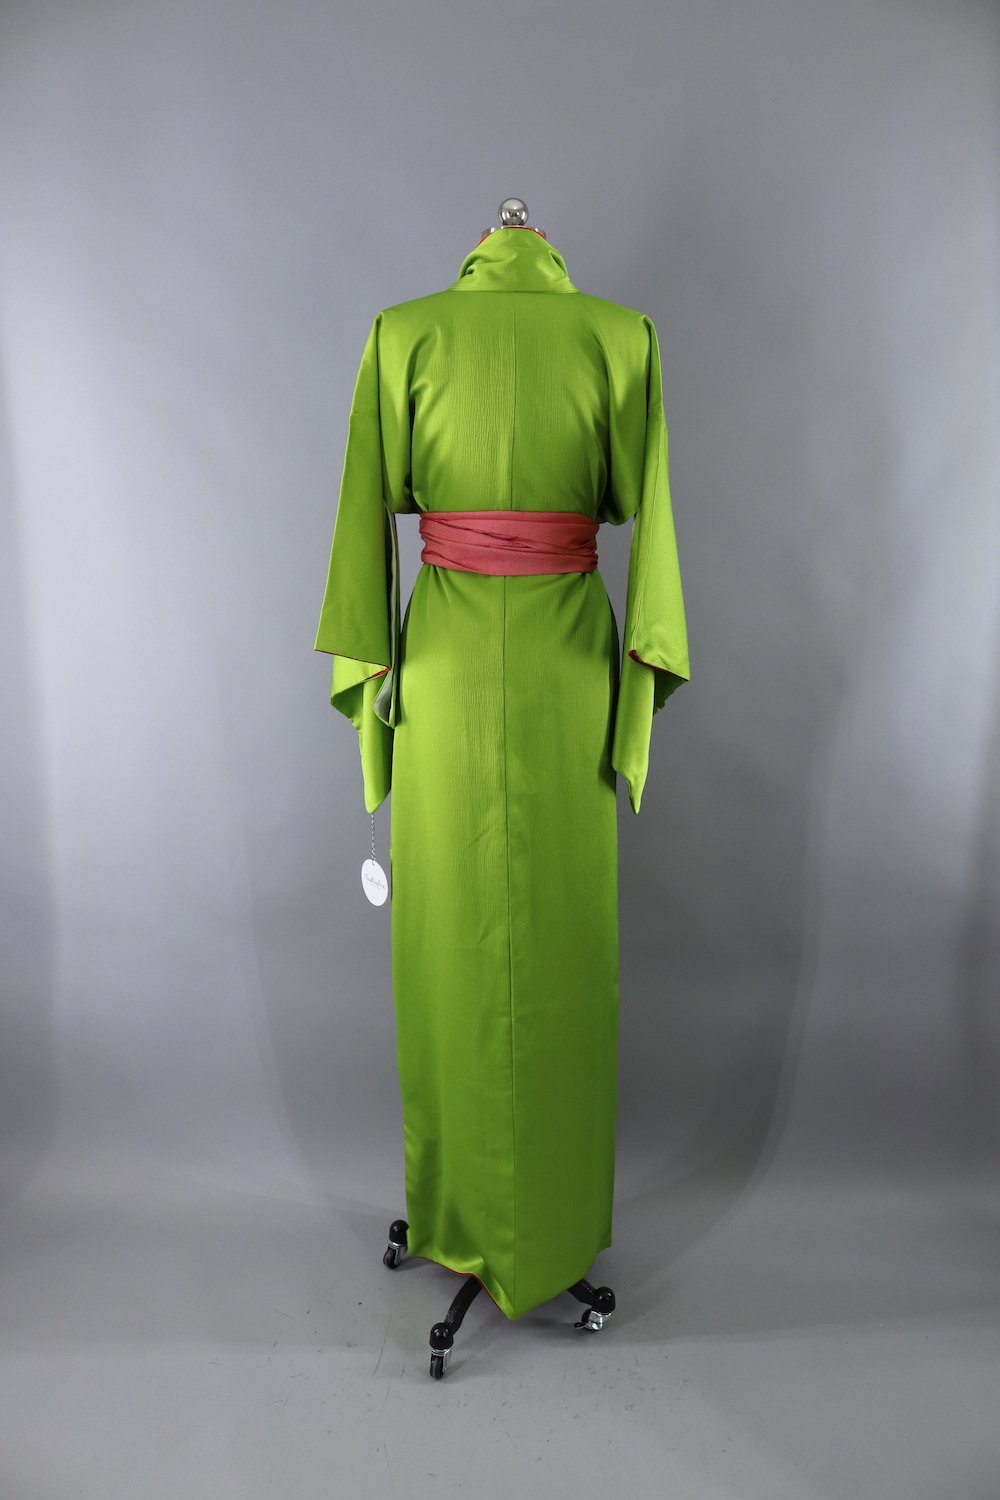 Vintage Kimono Robe / Acid Lime Green - ThisBlueBird